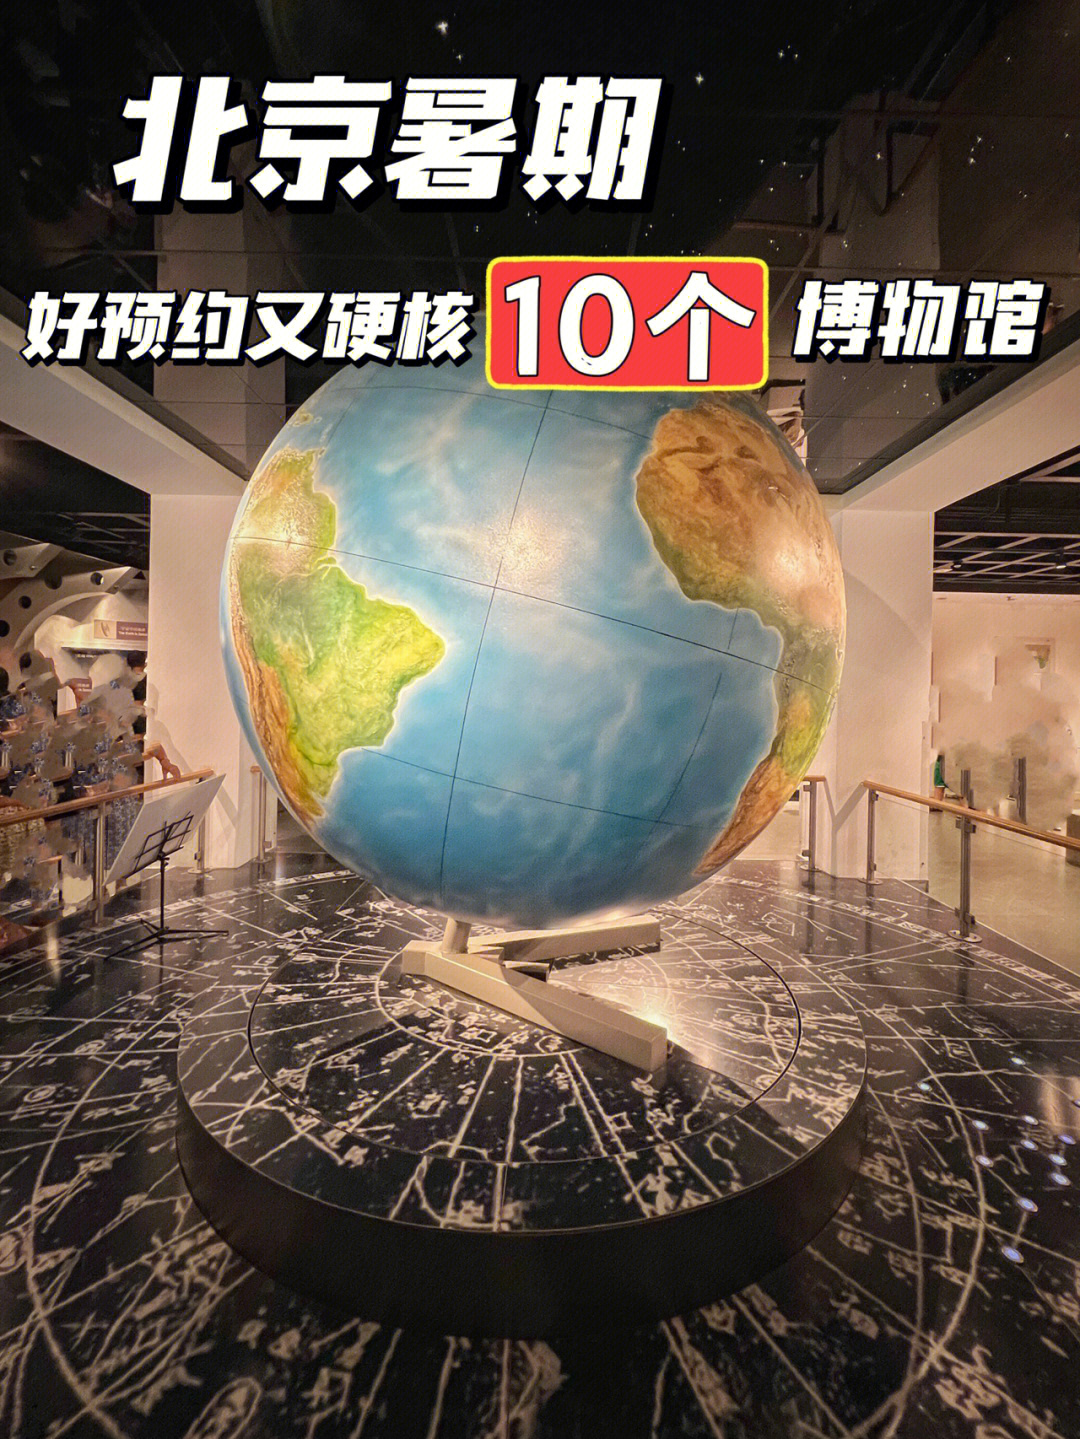 人真的太多了9292暑期北京热门博物馆,比如科技馆,天文馆预约好难